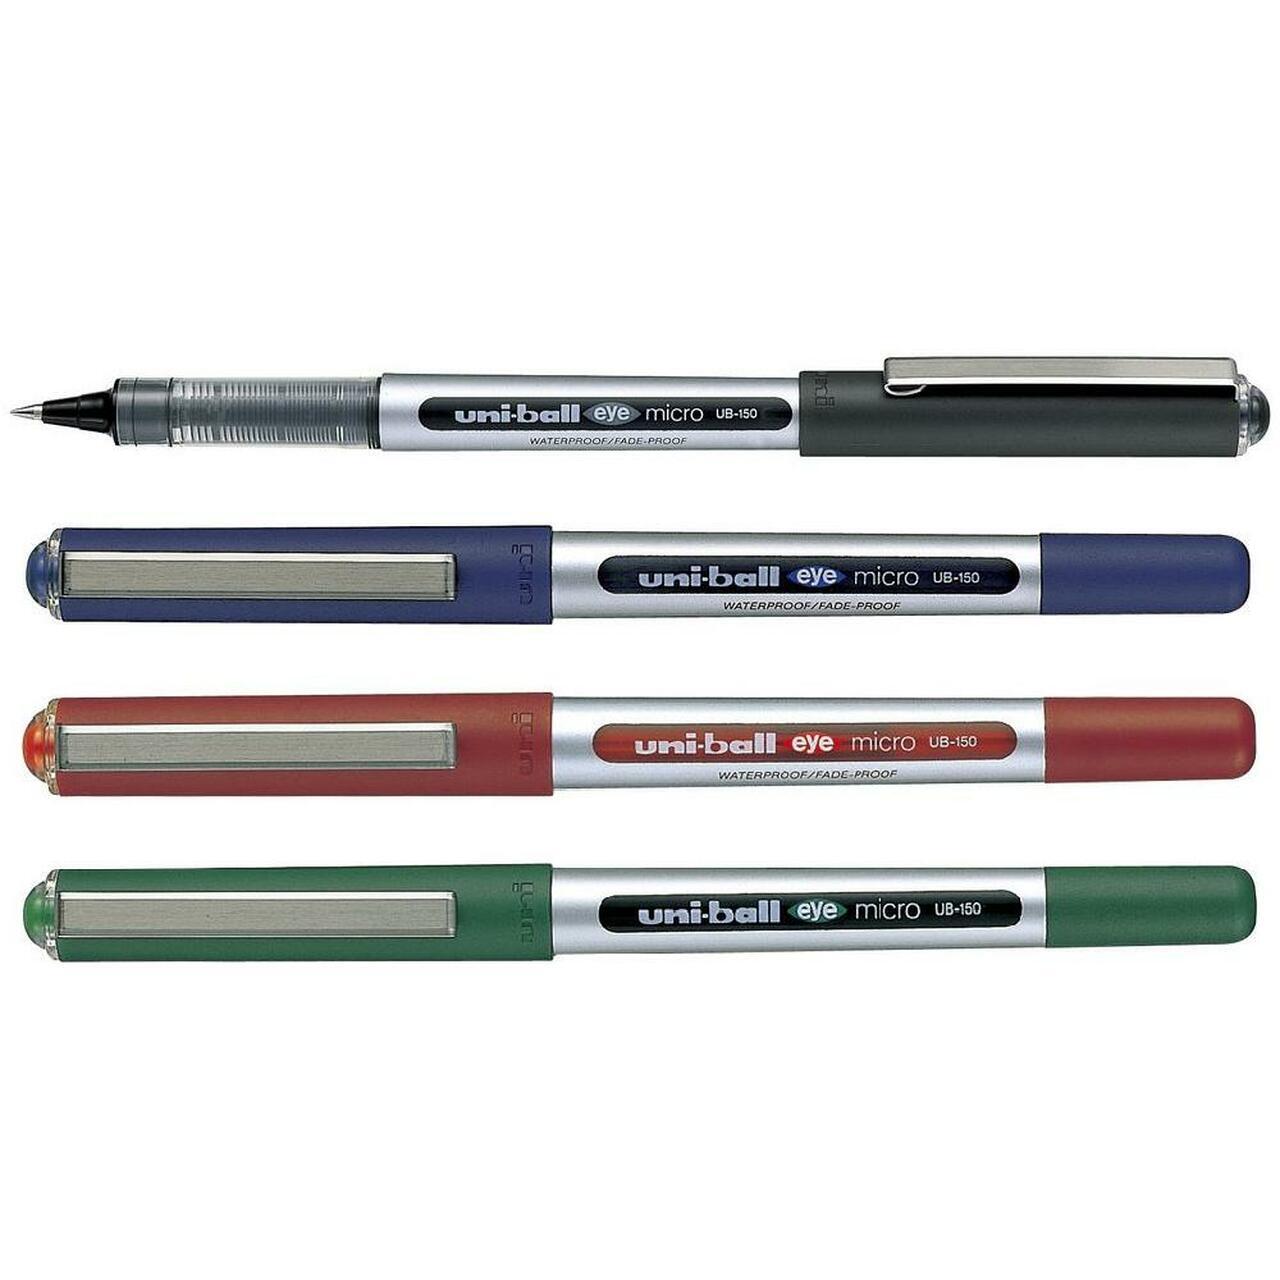 Ручки uni ball. Ручка Mitsubishi Uni-Ball. Mitsubishi Pen Uni Ball Eye Micro. Uni Ball ручка UB-150. Uni-Ball Eye 0,7мм.